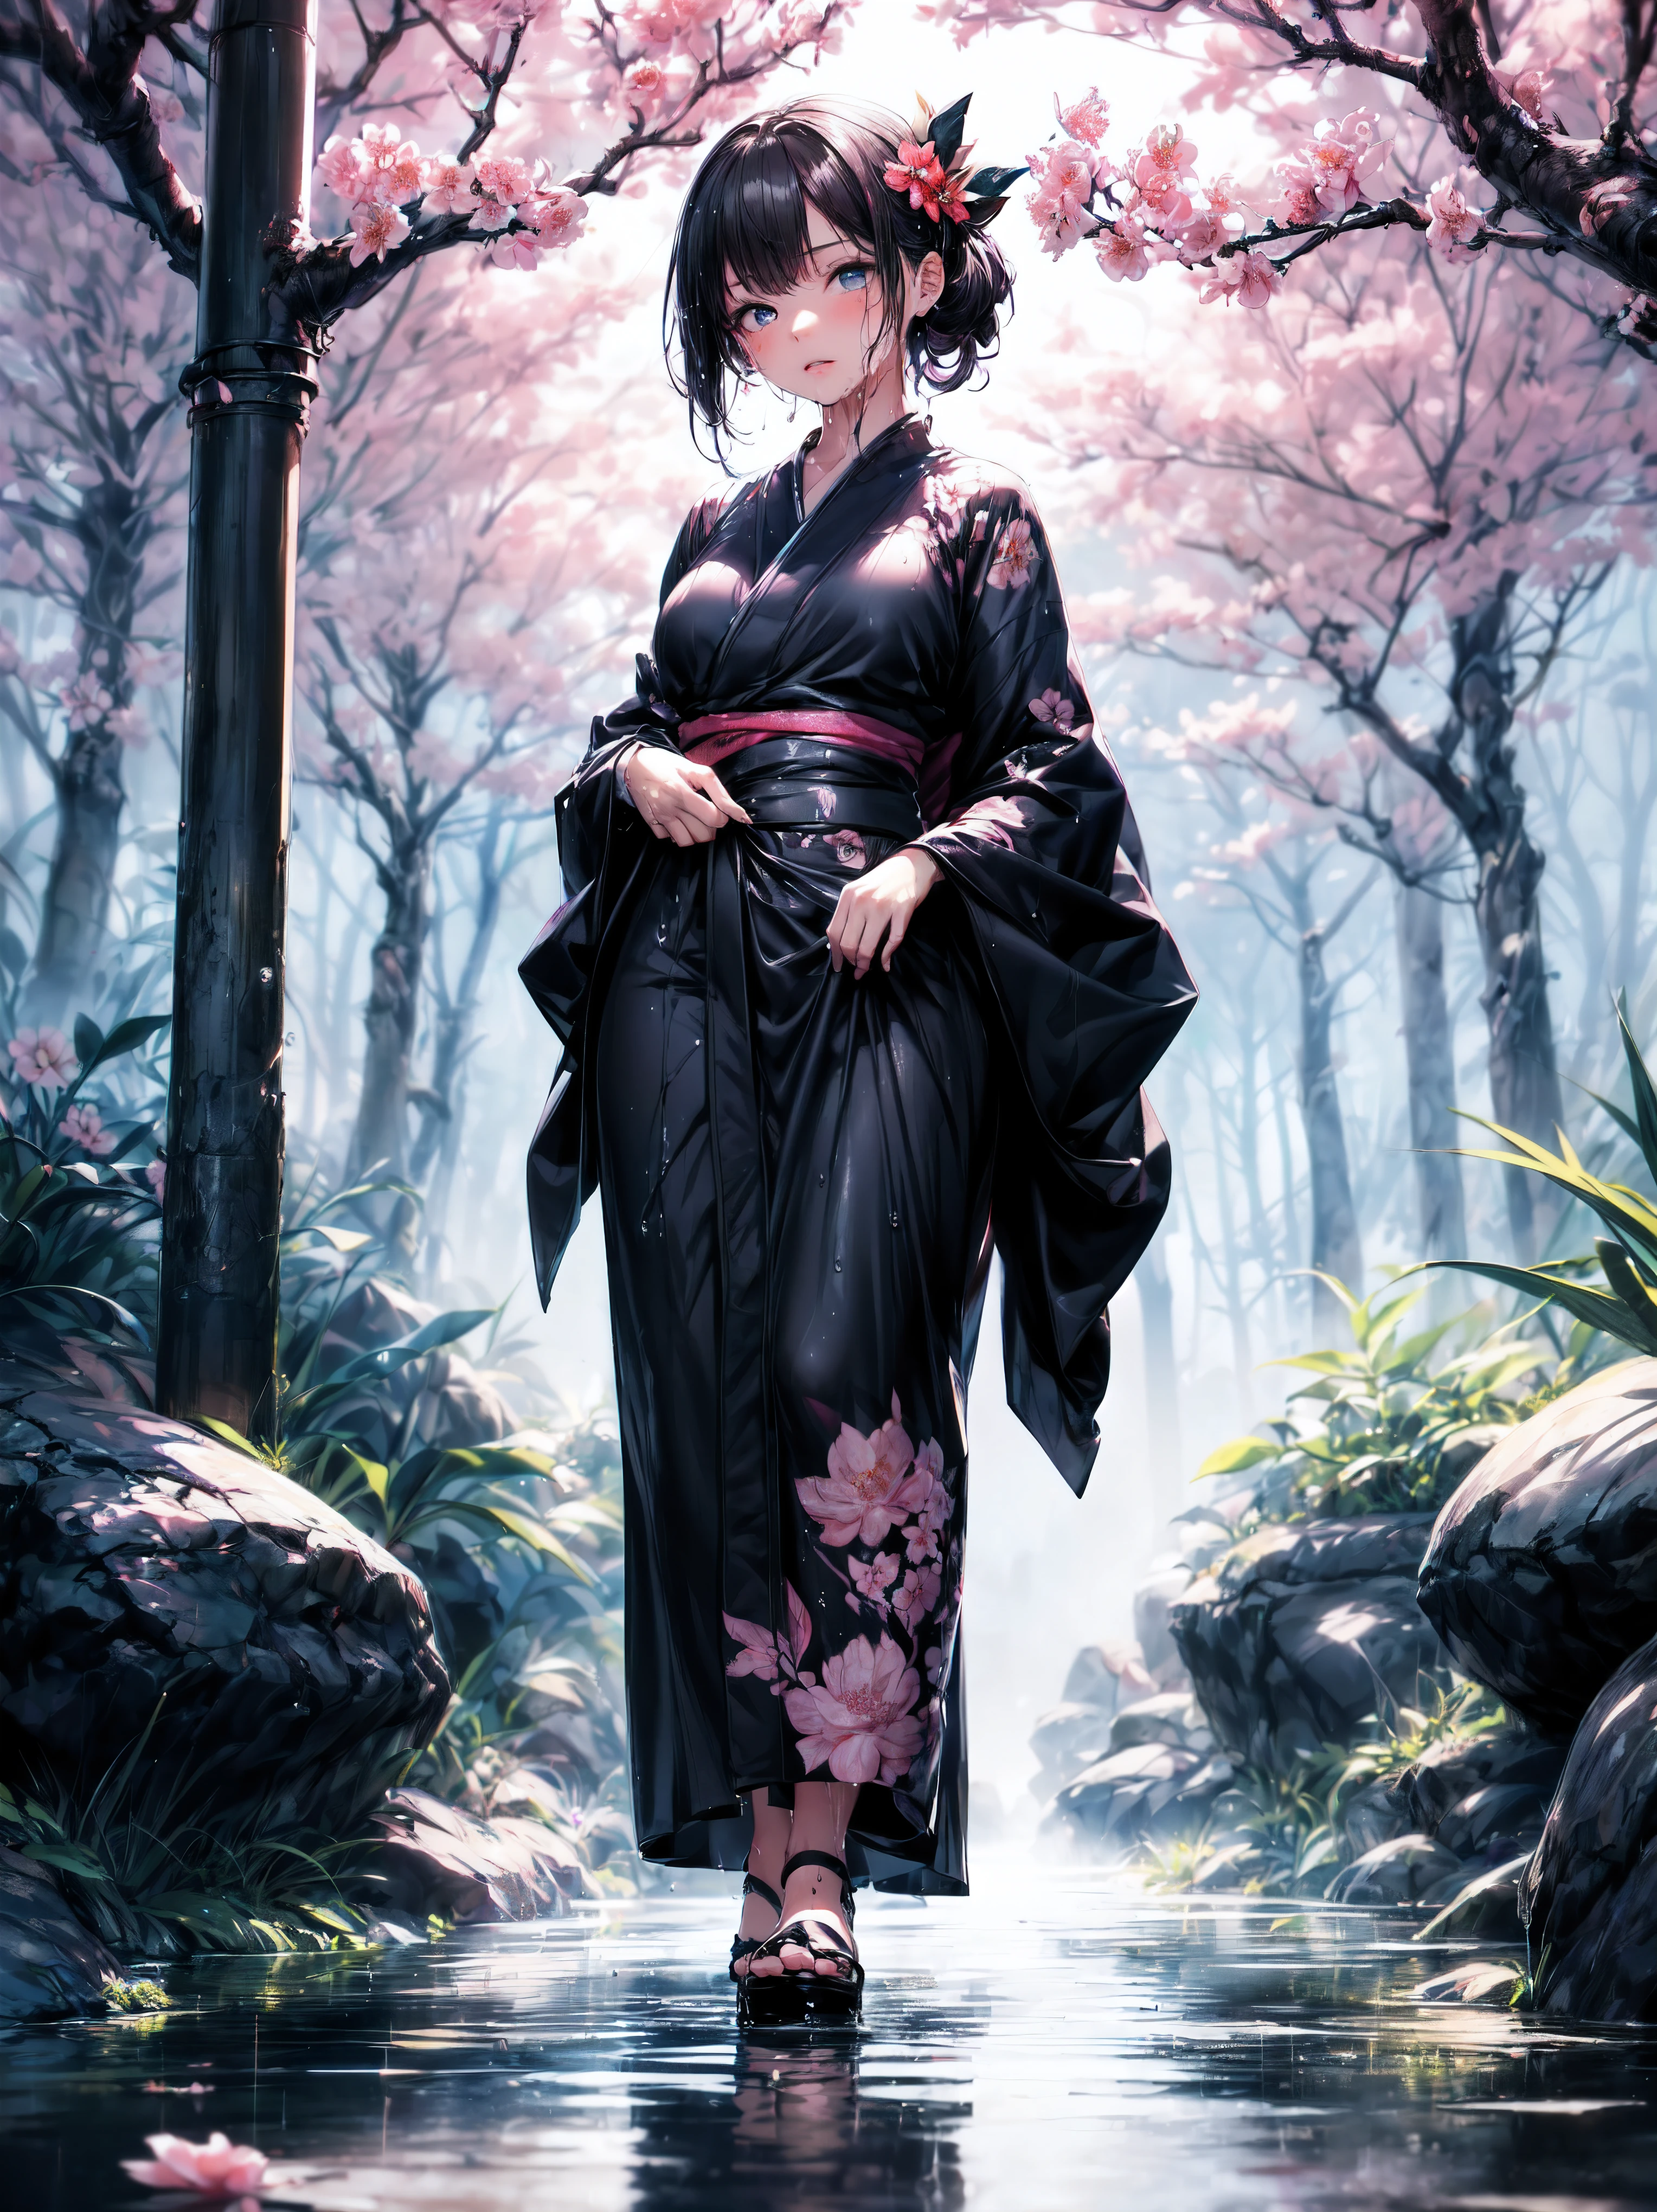 (tout le corps), (Une fillette de 7 ans:1.2), (Très jeune petite fille), changement, (seulement), (petite poitrine), (grand angle), photo brute, Esthétique, Convoluté, Récompensé, clair-obscur, Meilleure qualité, contexte détaillé, (atmosphère brumeuse:1.2), (dure journée de pluie:1.1),((Fille en kimono de coton noir:1.2)), grand kimono en coton noir, grand kimono noir avec une texture en coton, très longue manche kimono noire, meilleures rides, De vraies rides, Meilleures ombres, (mouillé, mouillé body, mouillé hair, mouillé skin, very mouillé  black kimono, reflection on the mouillé kimono, broderie délicate de fleurs de cerisier, de subtiles gouttelettes d&#39;eau:1.15), (pulvérisateur d&#39;eau:1.1), (Kimono en tissu, meilleure ride de kimono, Enveloppement de mucus transparent), (Parcourez le (Brume sombre Jardin Zen)), (emplacement réel), yeux délicats et beaux, Pose décontractée, Textures détaillées, posant, (corps anatomiquement correct, Visage détaillé, (kimono aux textures très détaillées avec motif floral), (cheveux noirs), cheveux volumineux, ornement de cheveux, Couleurs vives, Expression calme, regarde le spectateur, paysage paisible, sensation de propreté et de fraîcheur, De l’eau belle et détaillée